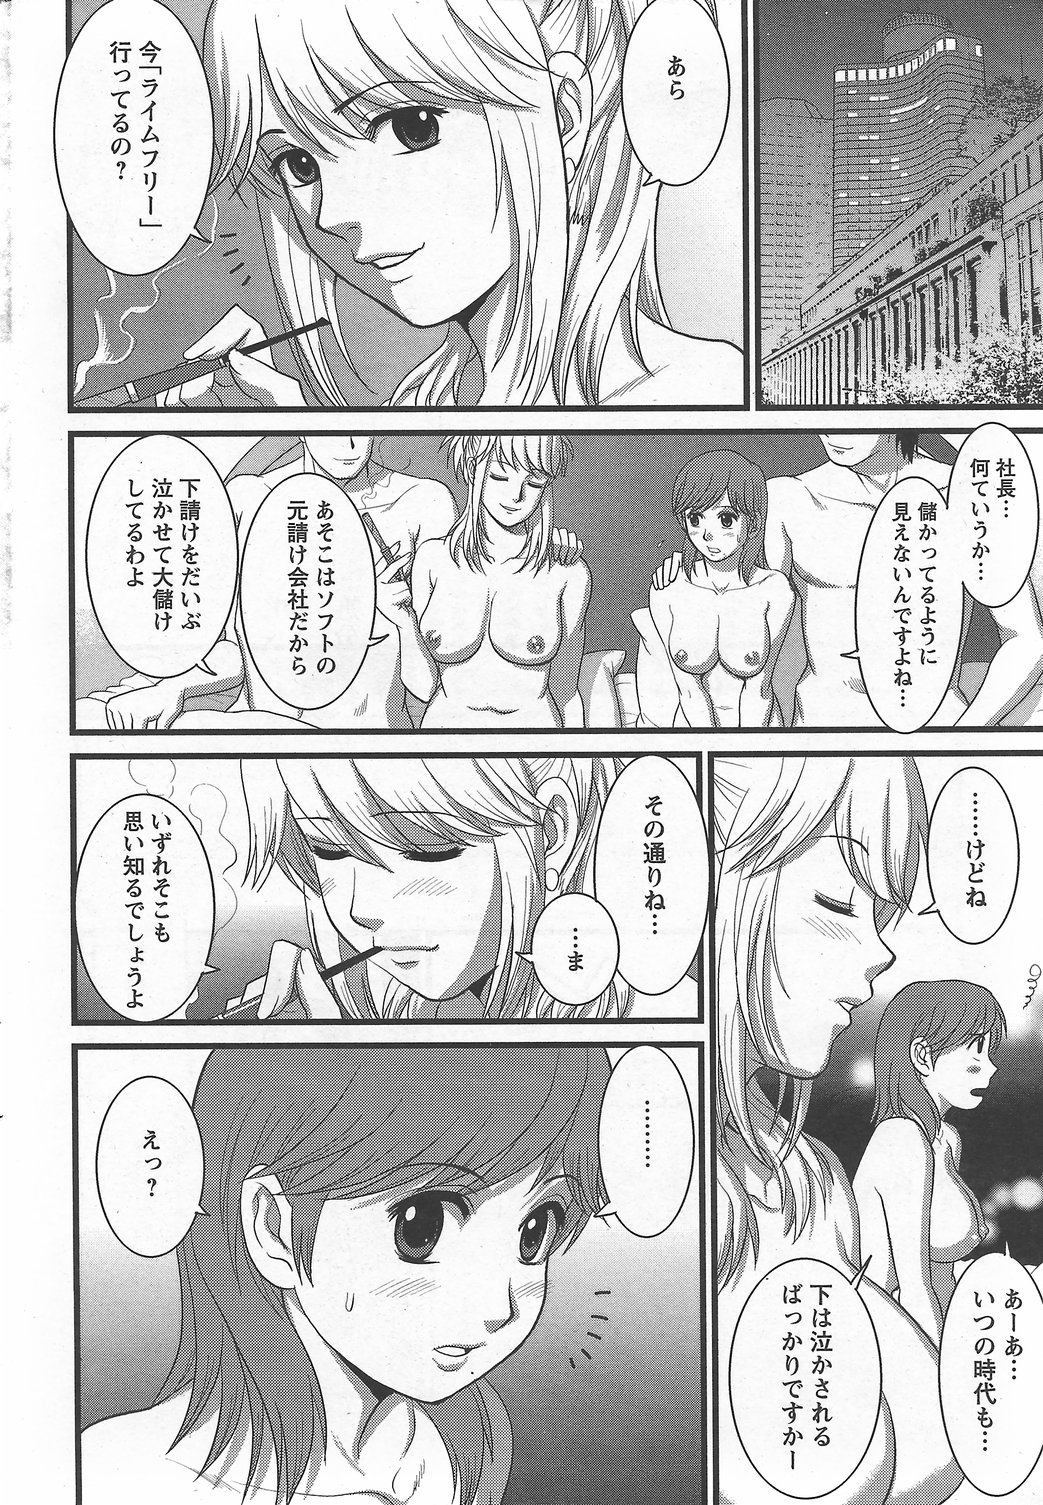 Haken no Muuko-san 6 [Saigado] page 9 full